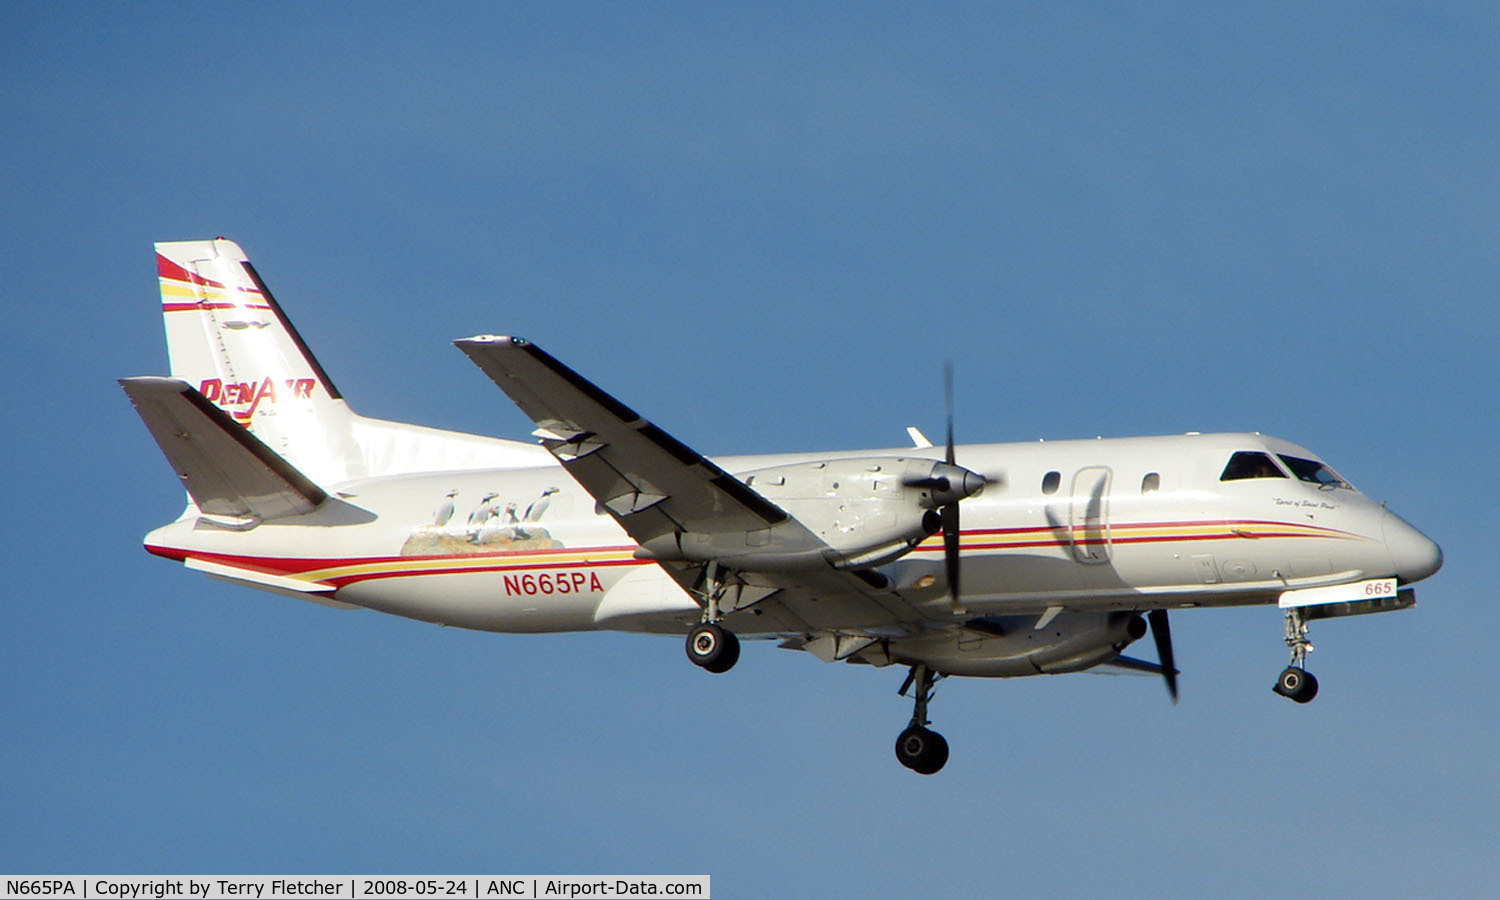 N665PA, 1990 Saab 340B C/N 340B-181, Penair Saab 340 about to land at Anchorage